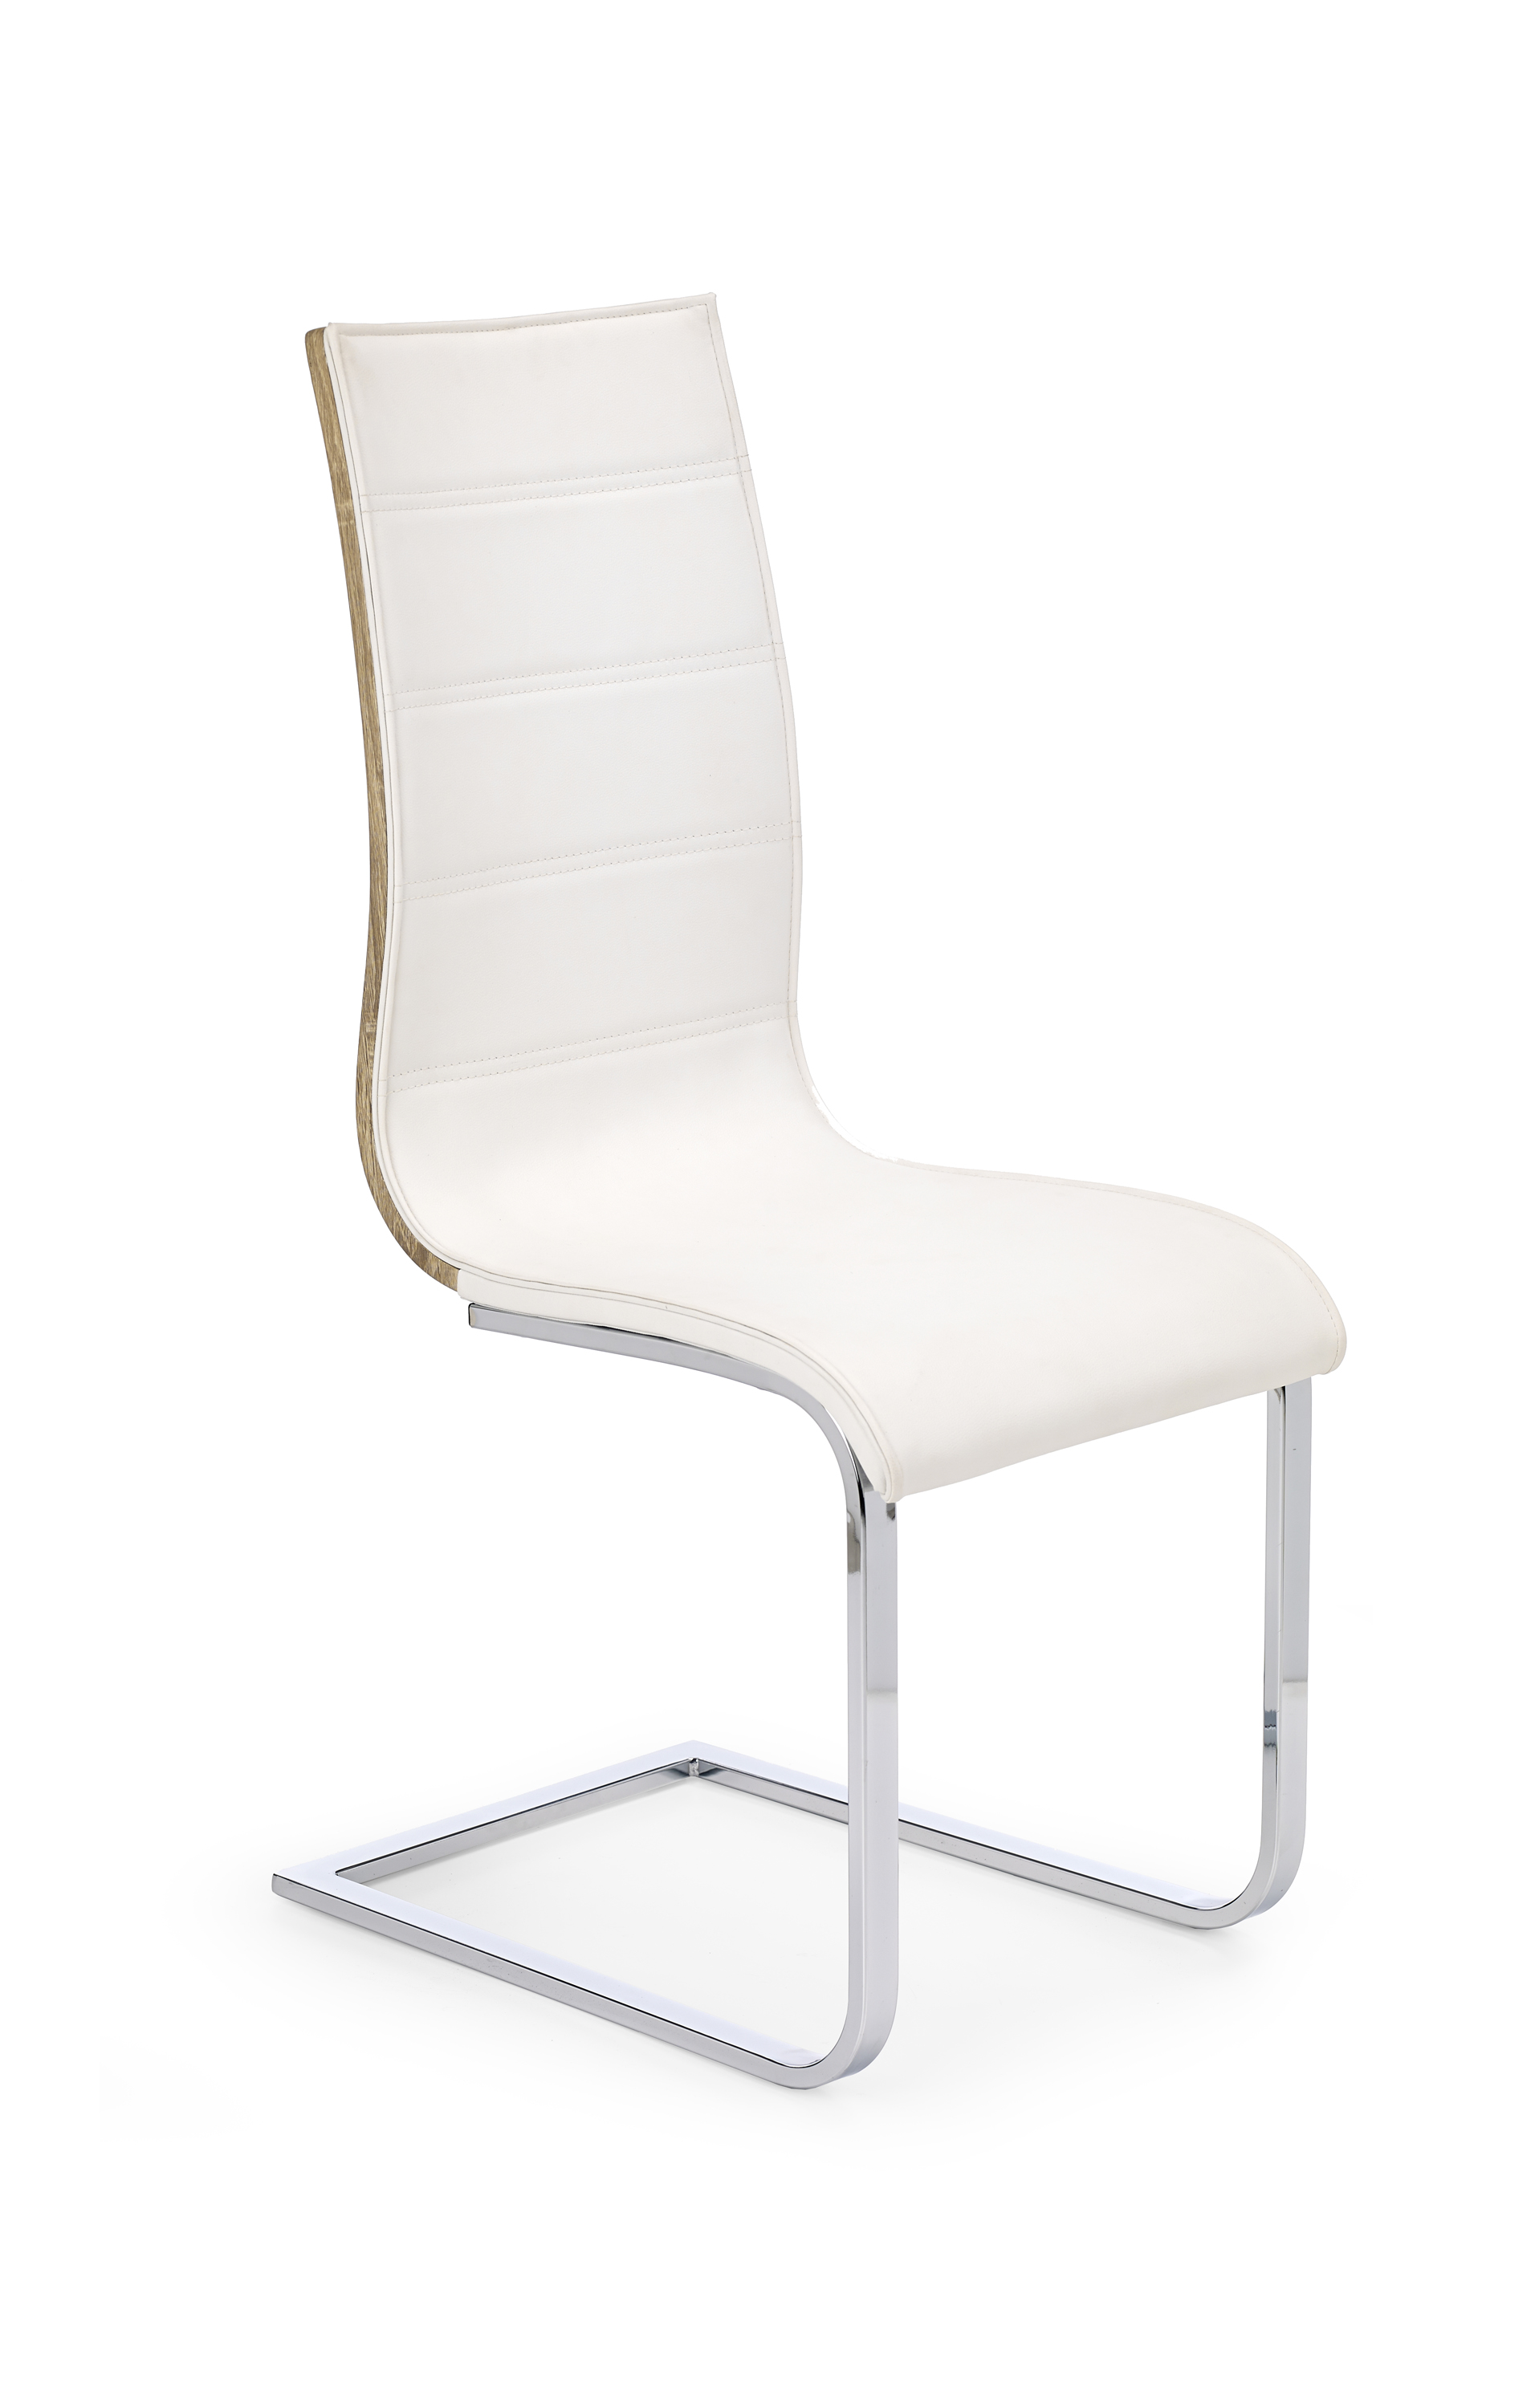 K104 krzesło biały/sonoma ekoskóra